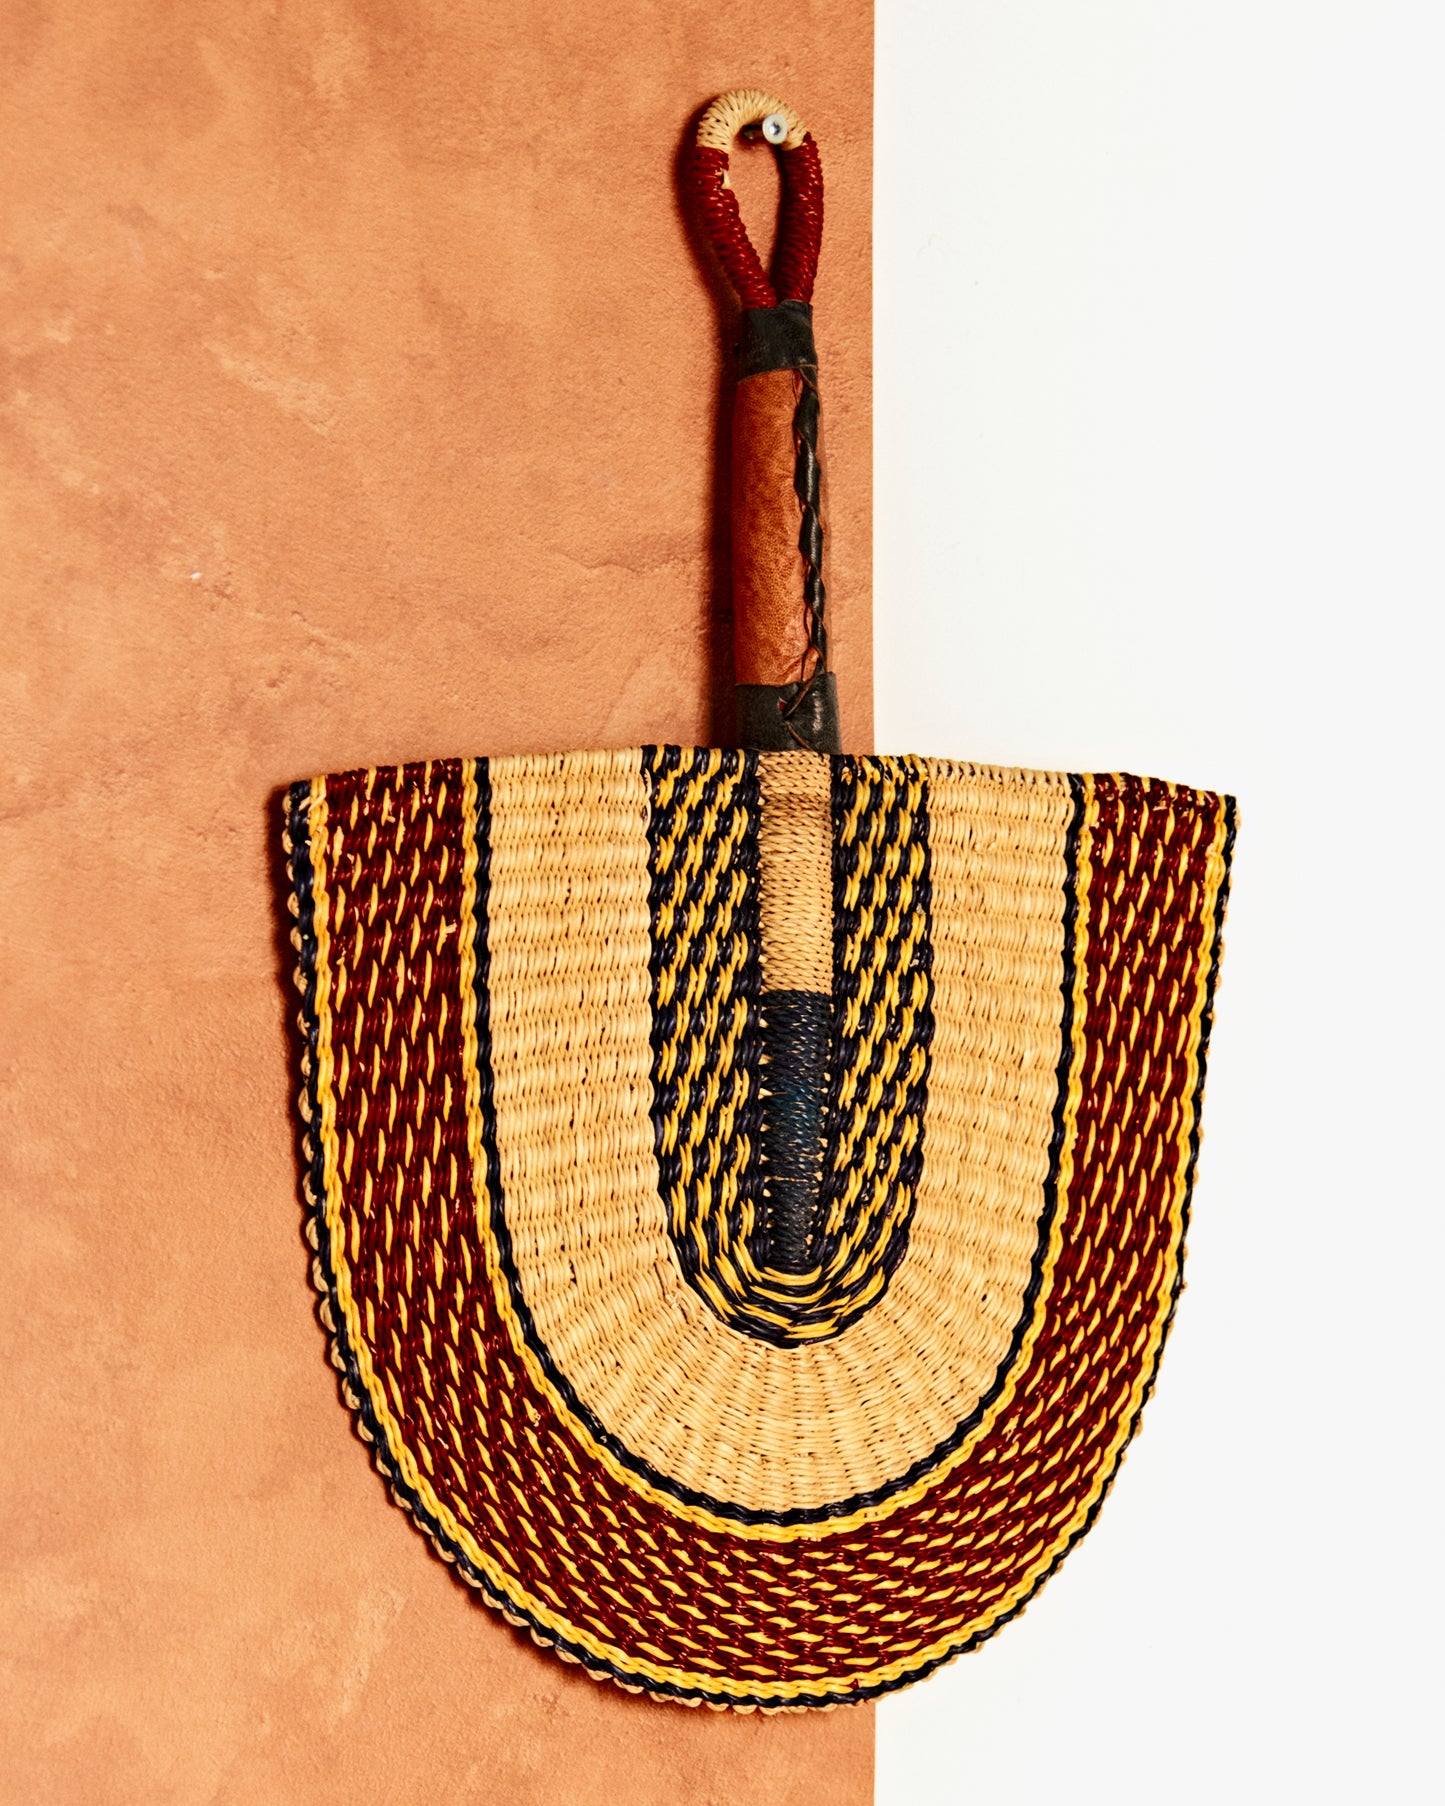 Benin Hand Fan & Wall Hanging